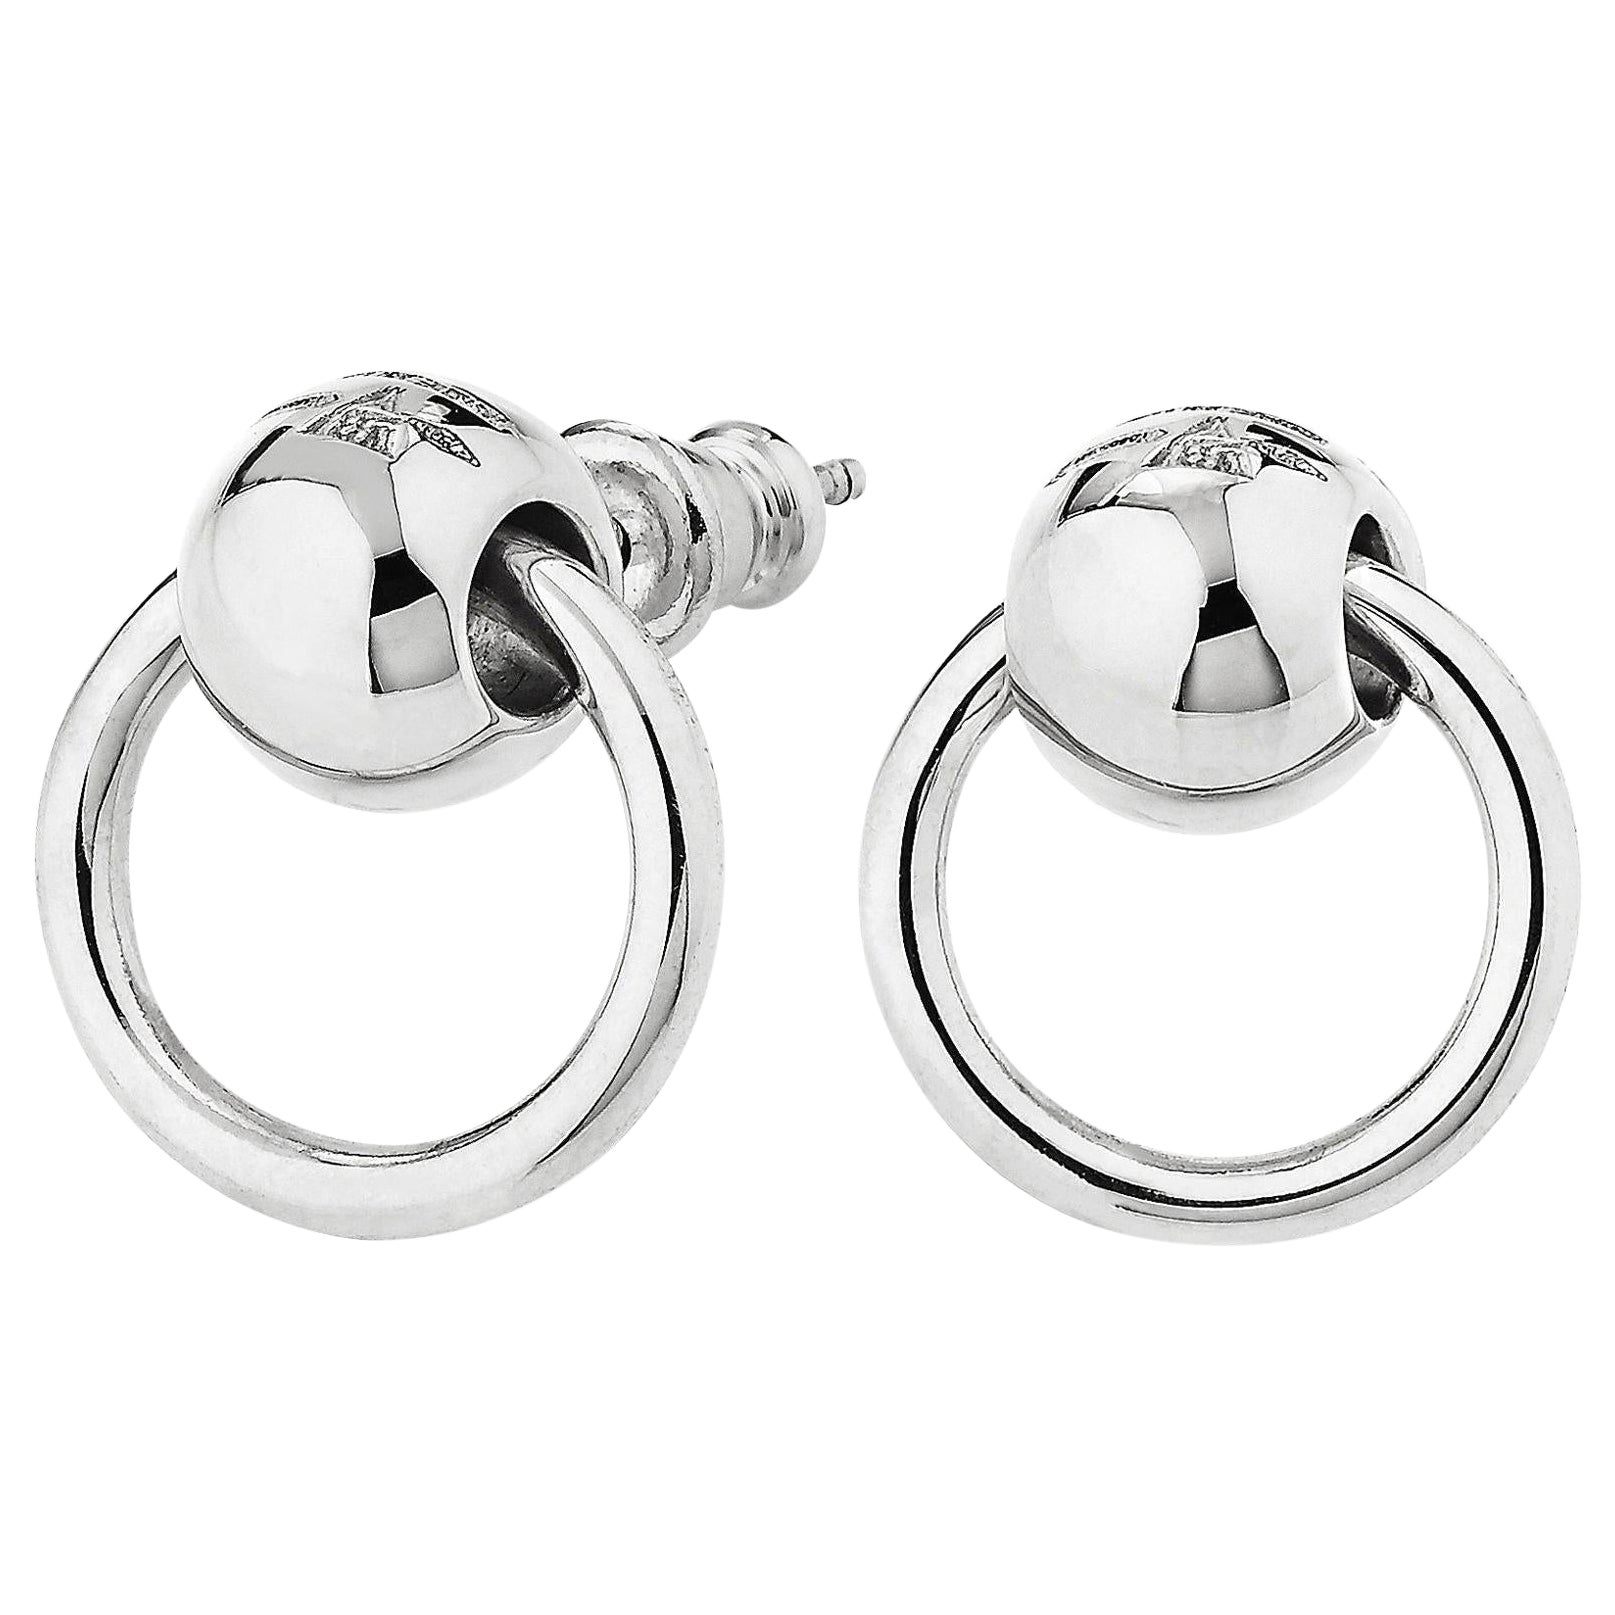 Betony Vernon "O'Ring Earrings" Sterling Silver 925 in Stock